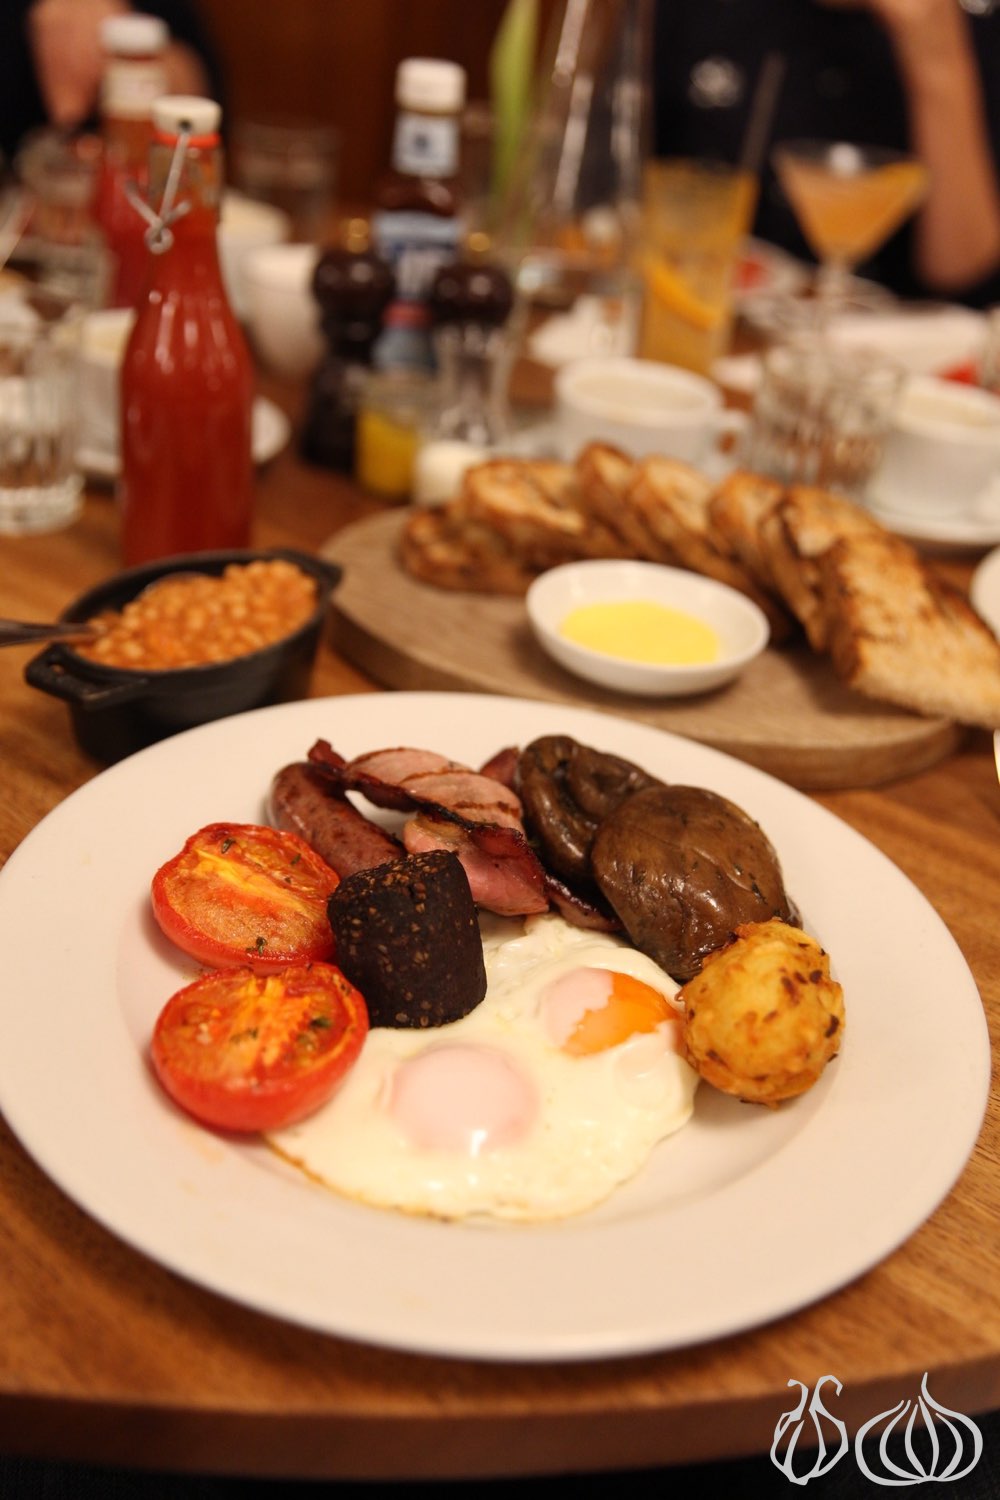 hawksmoor-english-breakfast-london192015-06-19-05-53-17